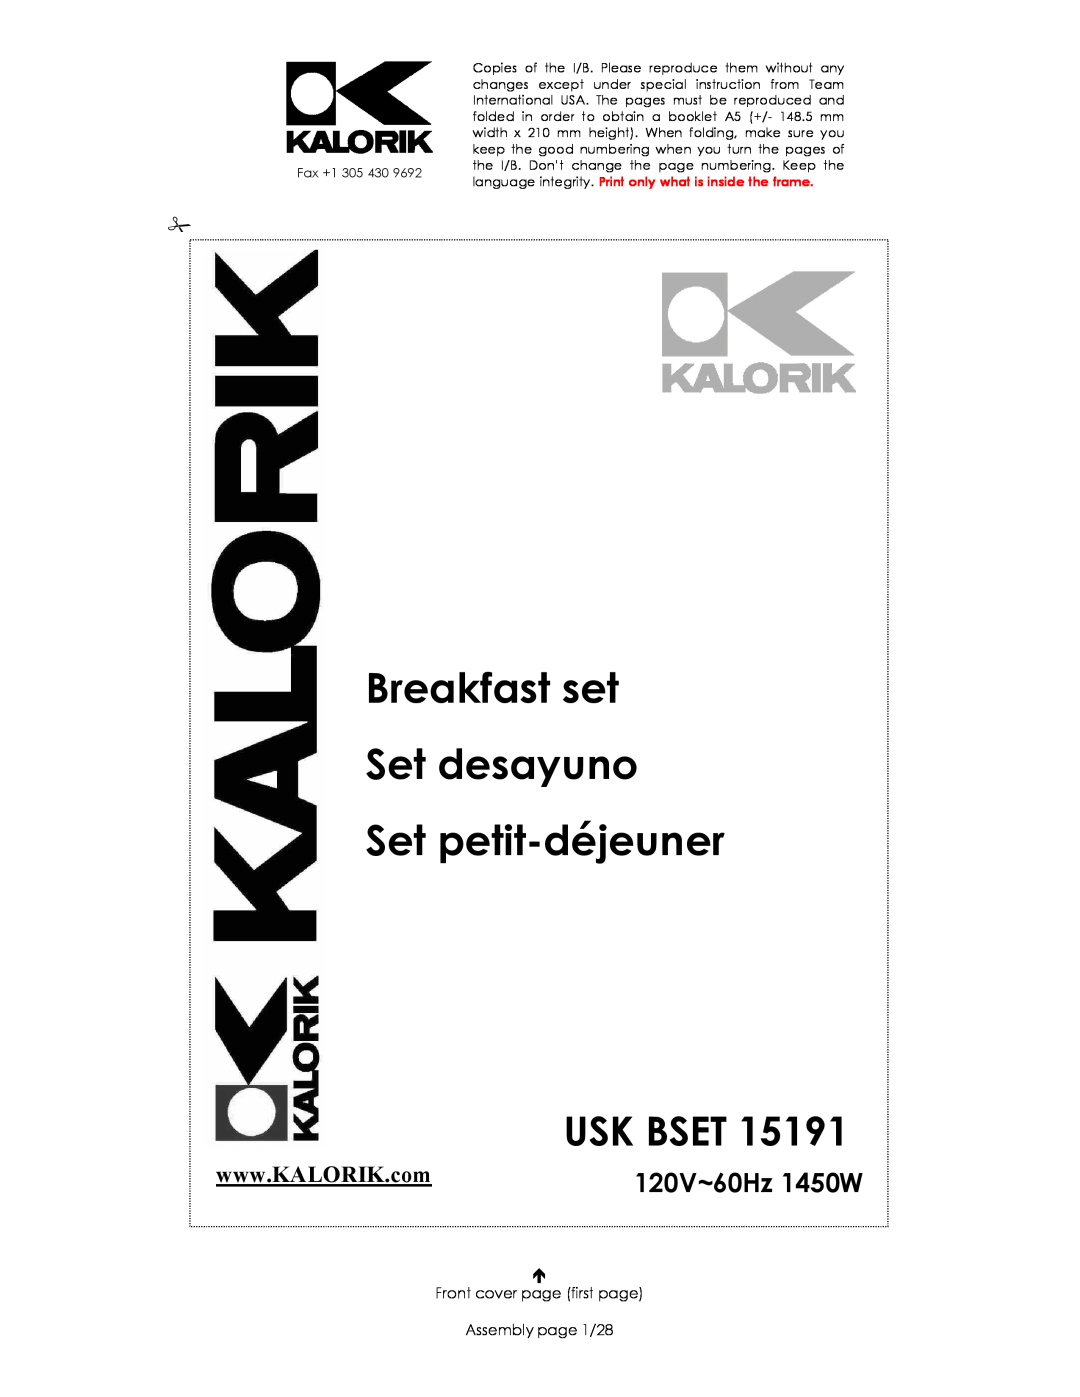 Kalorik USK BSET 15191 manual Usk Bset, 120V~60Hz 1450W, Breakfast set Set desayuno Set petit-déjeuner 